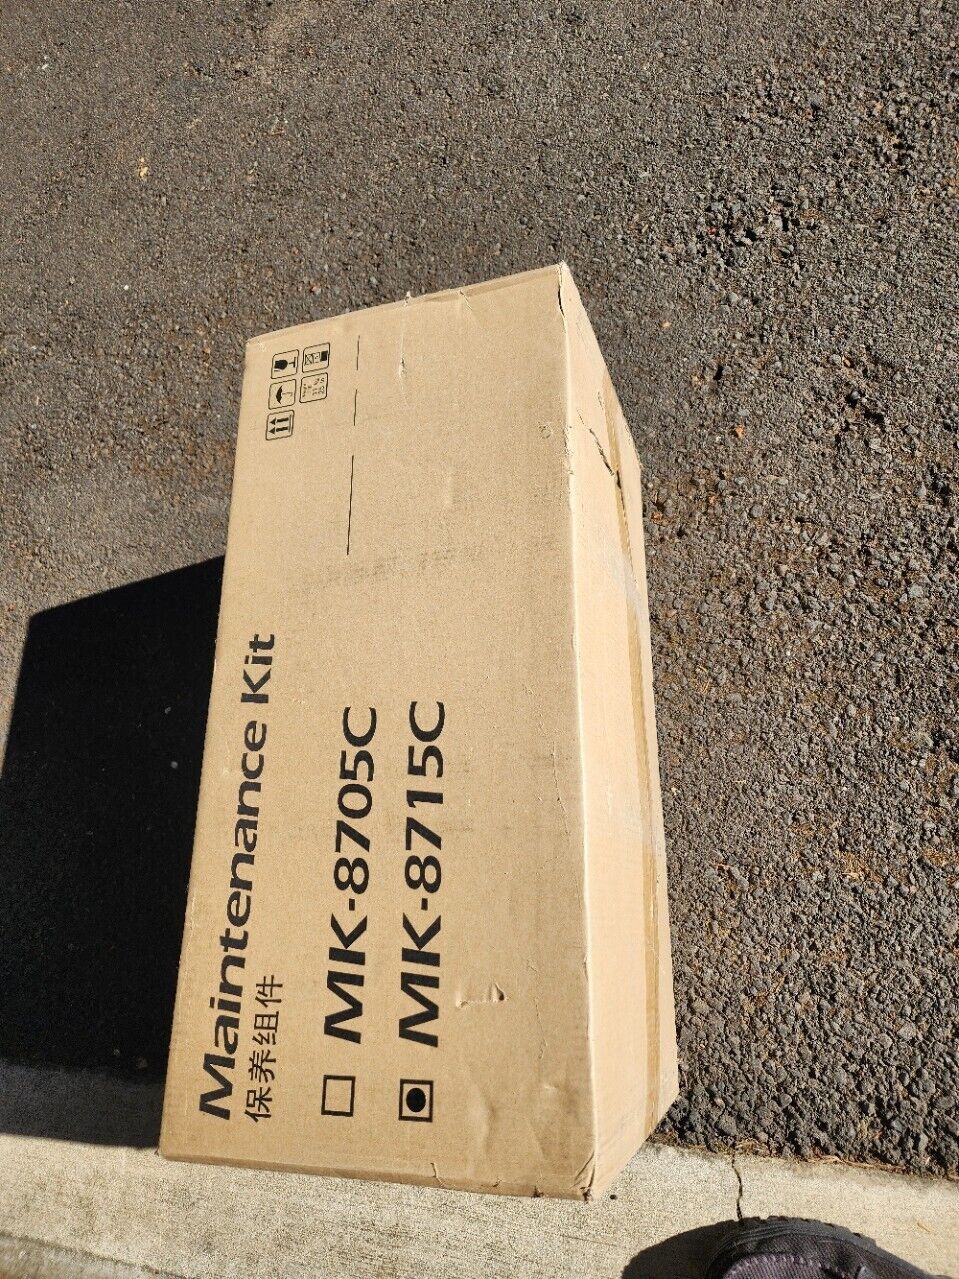 NIB Genuine Kyocera MK-8715C Maintenance Kit for Taskalfa 65/75ci